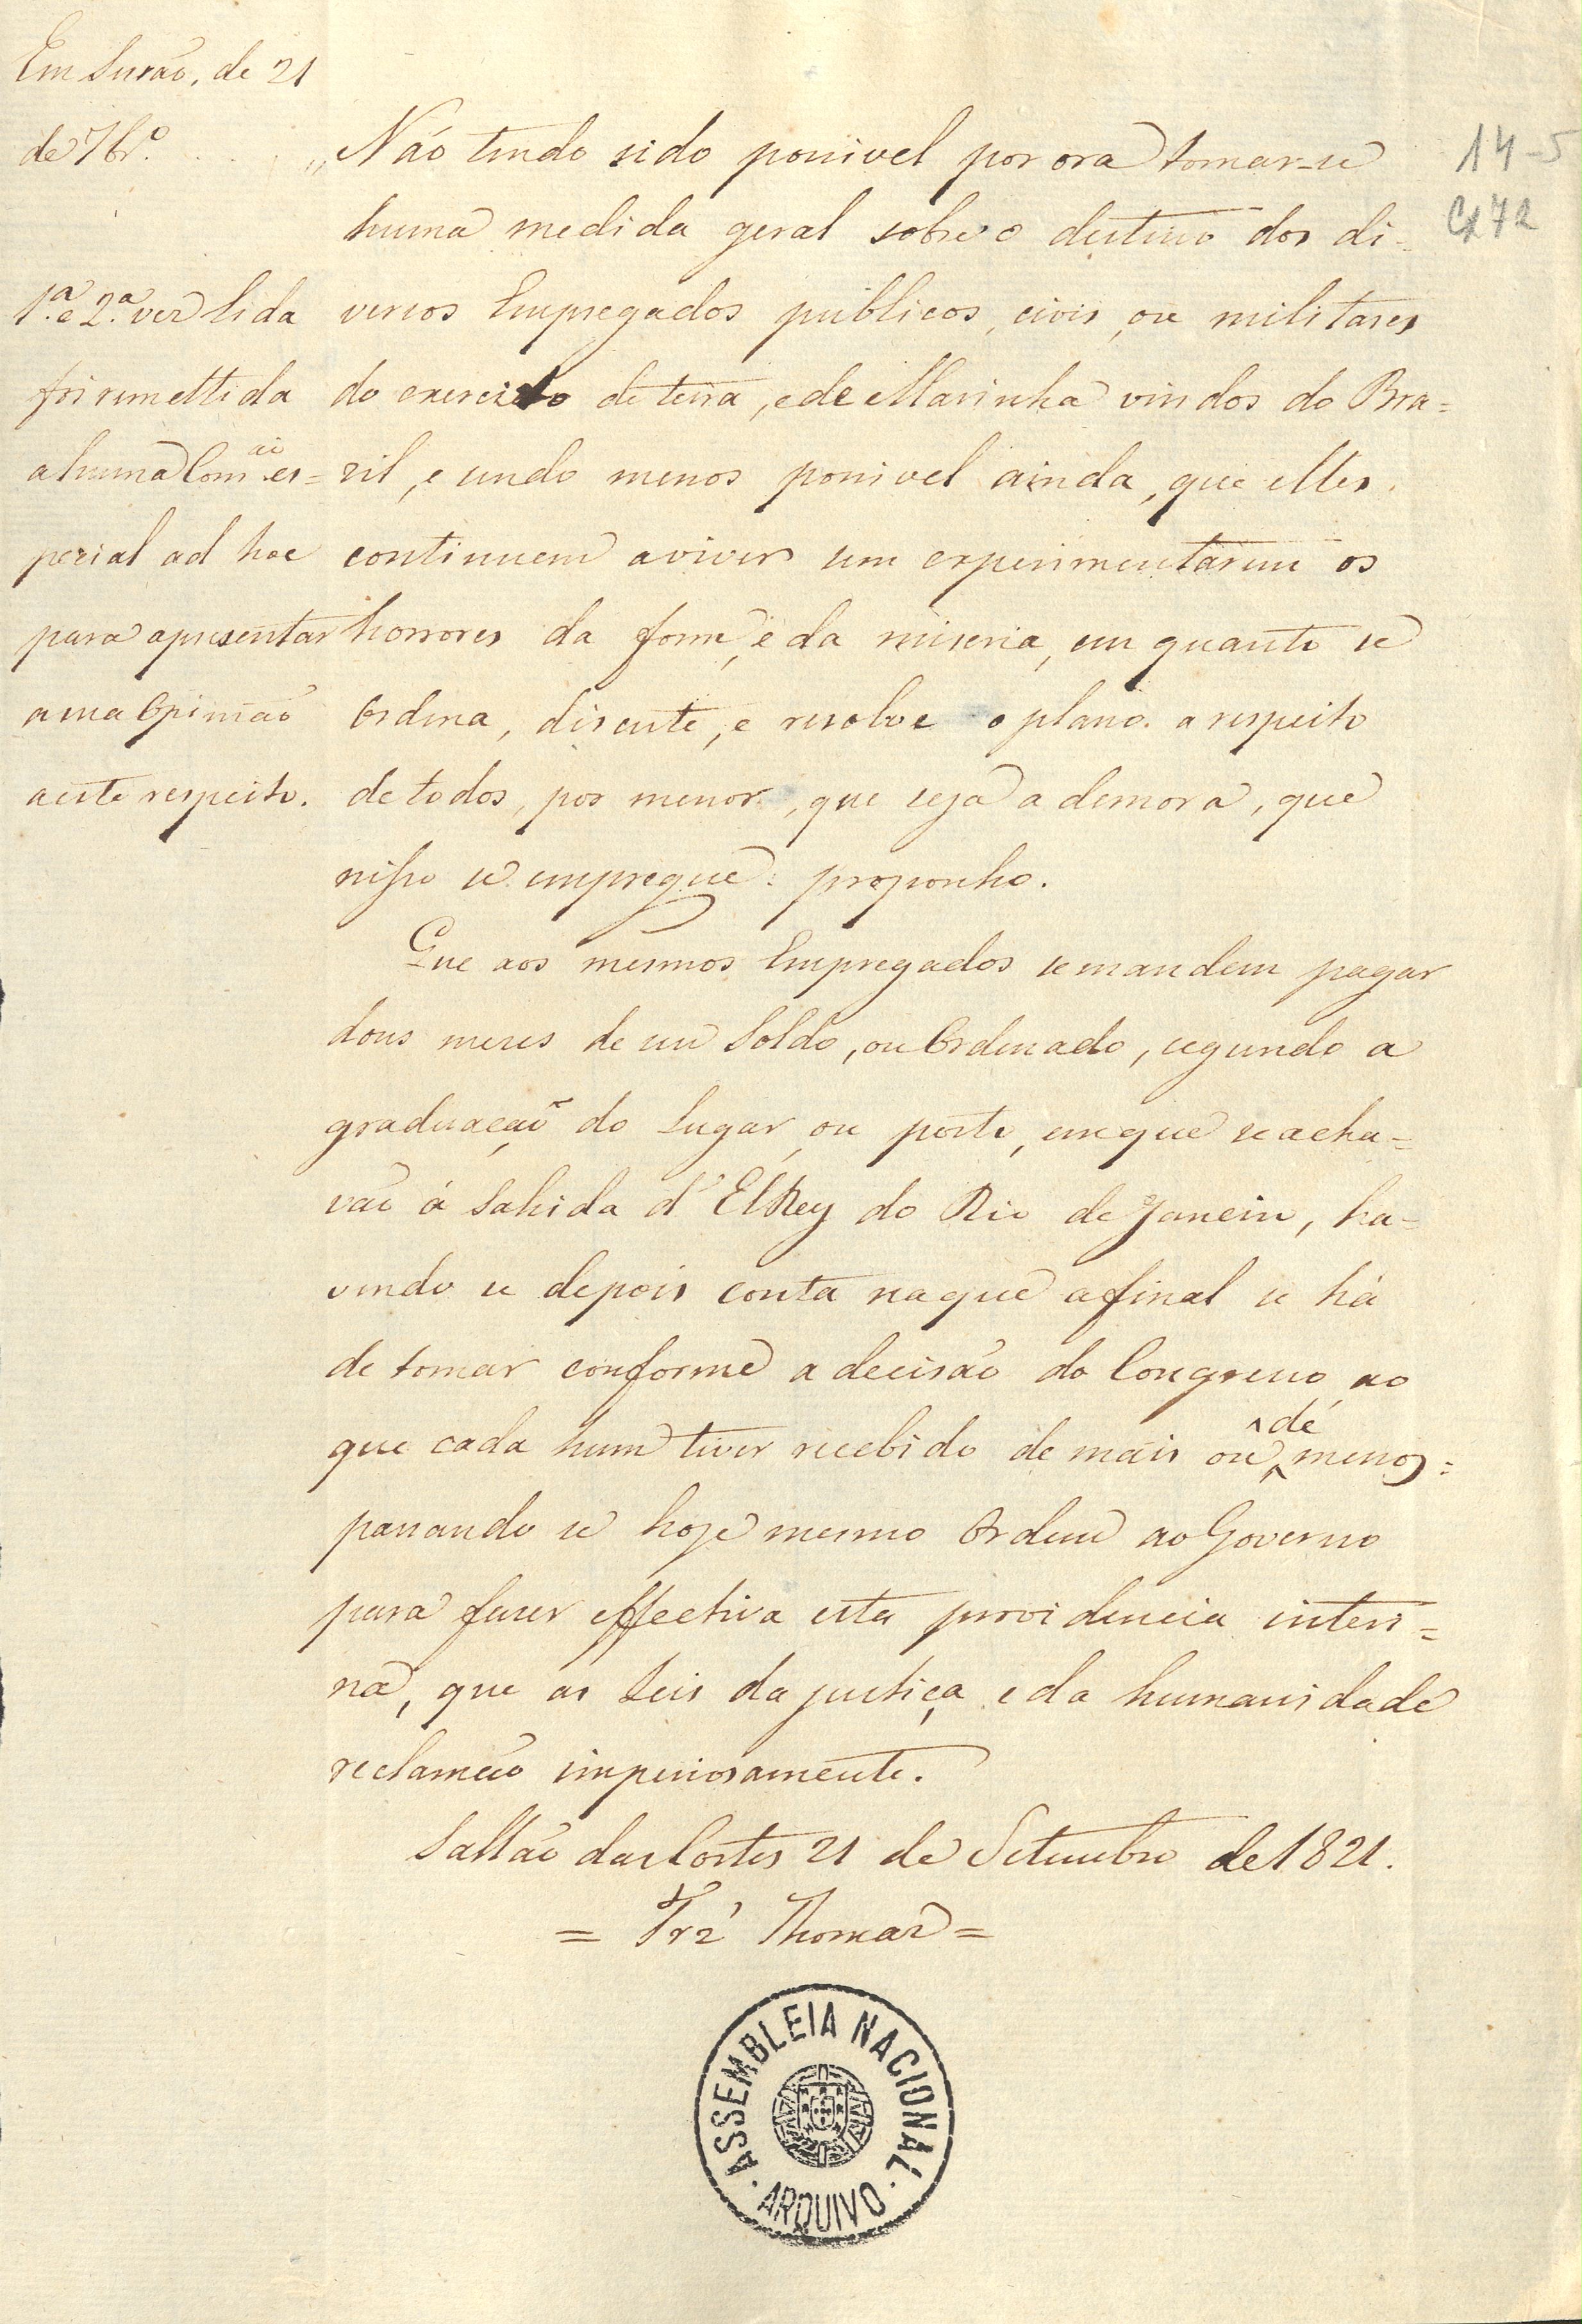  Indicação de 21 de setembro de 1821, do deputado Fernandes Tomás, para que se paguem dois meses de soldo ou ordenado aos empregados, ajustando-se depois as contas